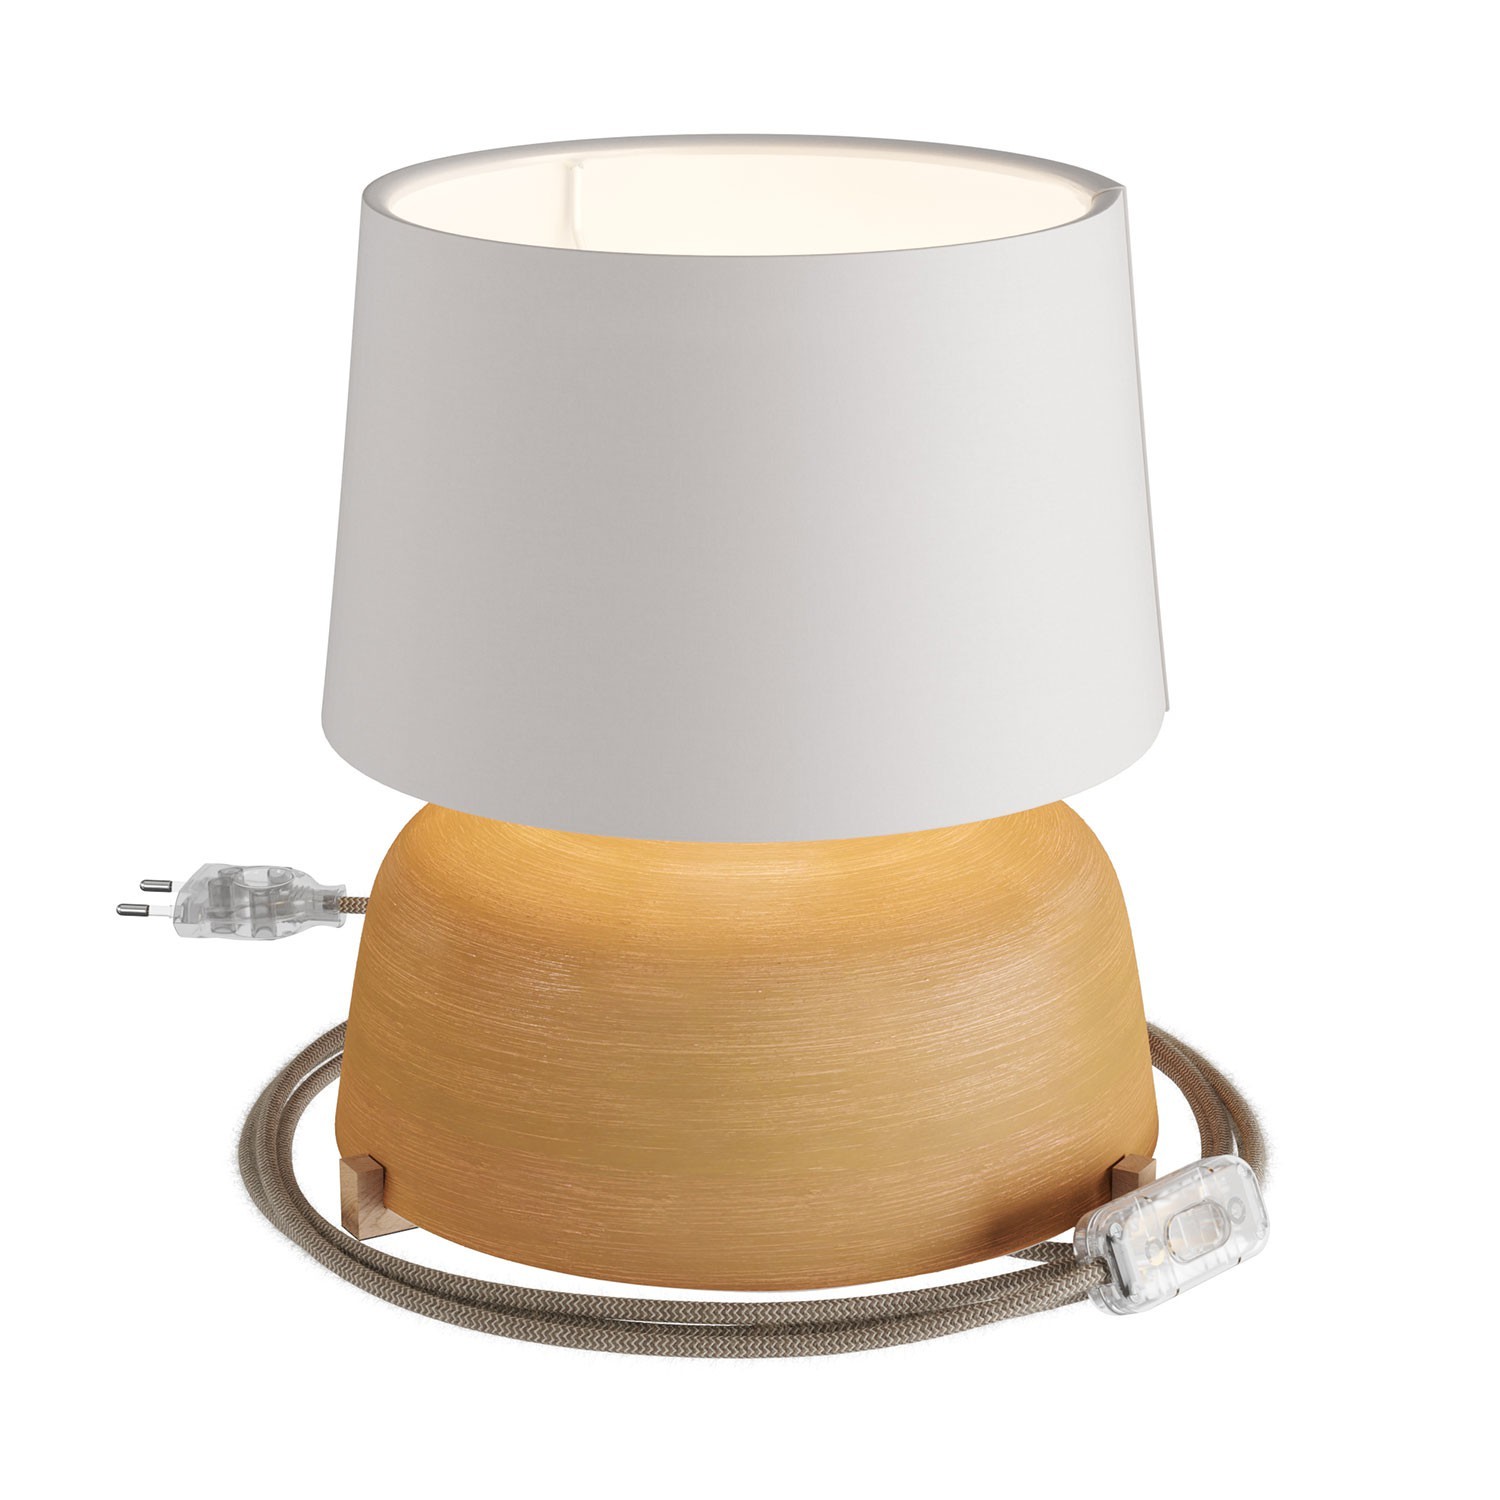 Lámpara de sobremesa de cerámica Coppa con pantalla Athena, completa con cable textil, interruptor y clavija de 2 polos